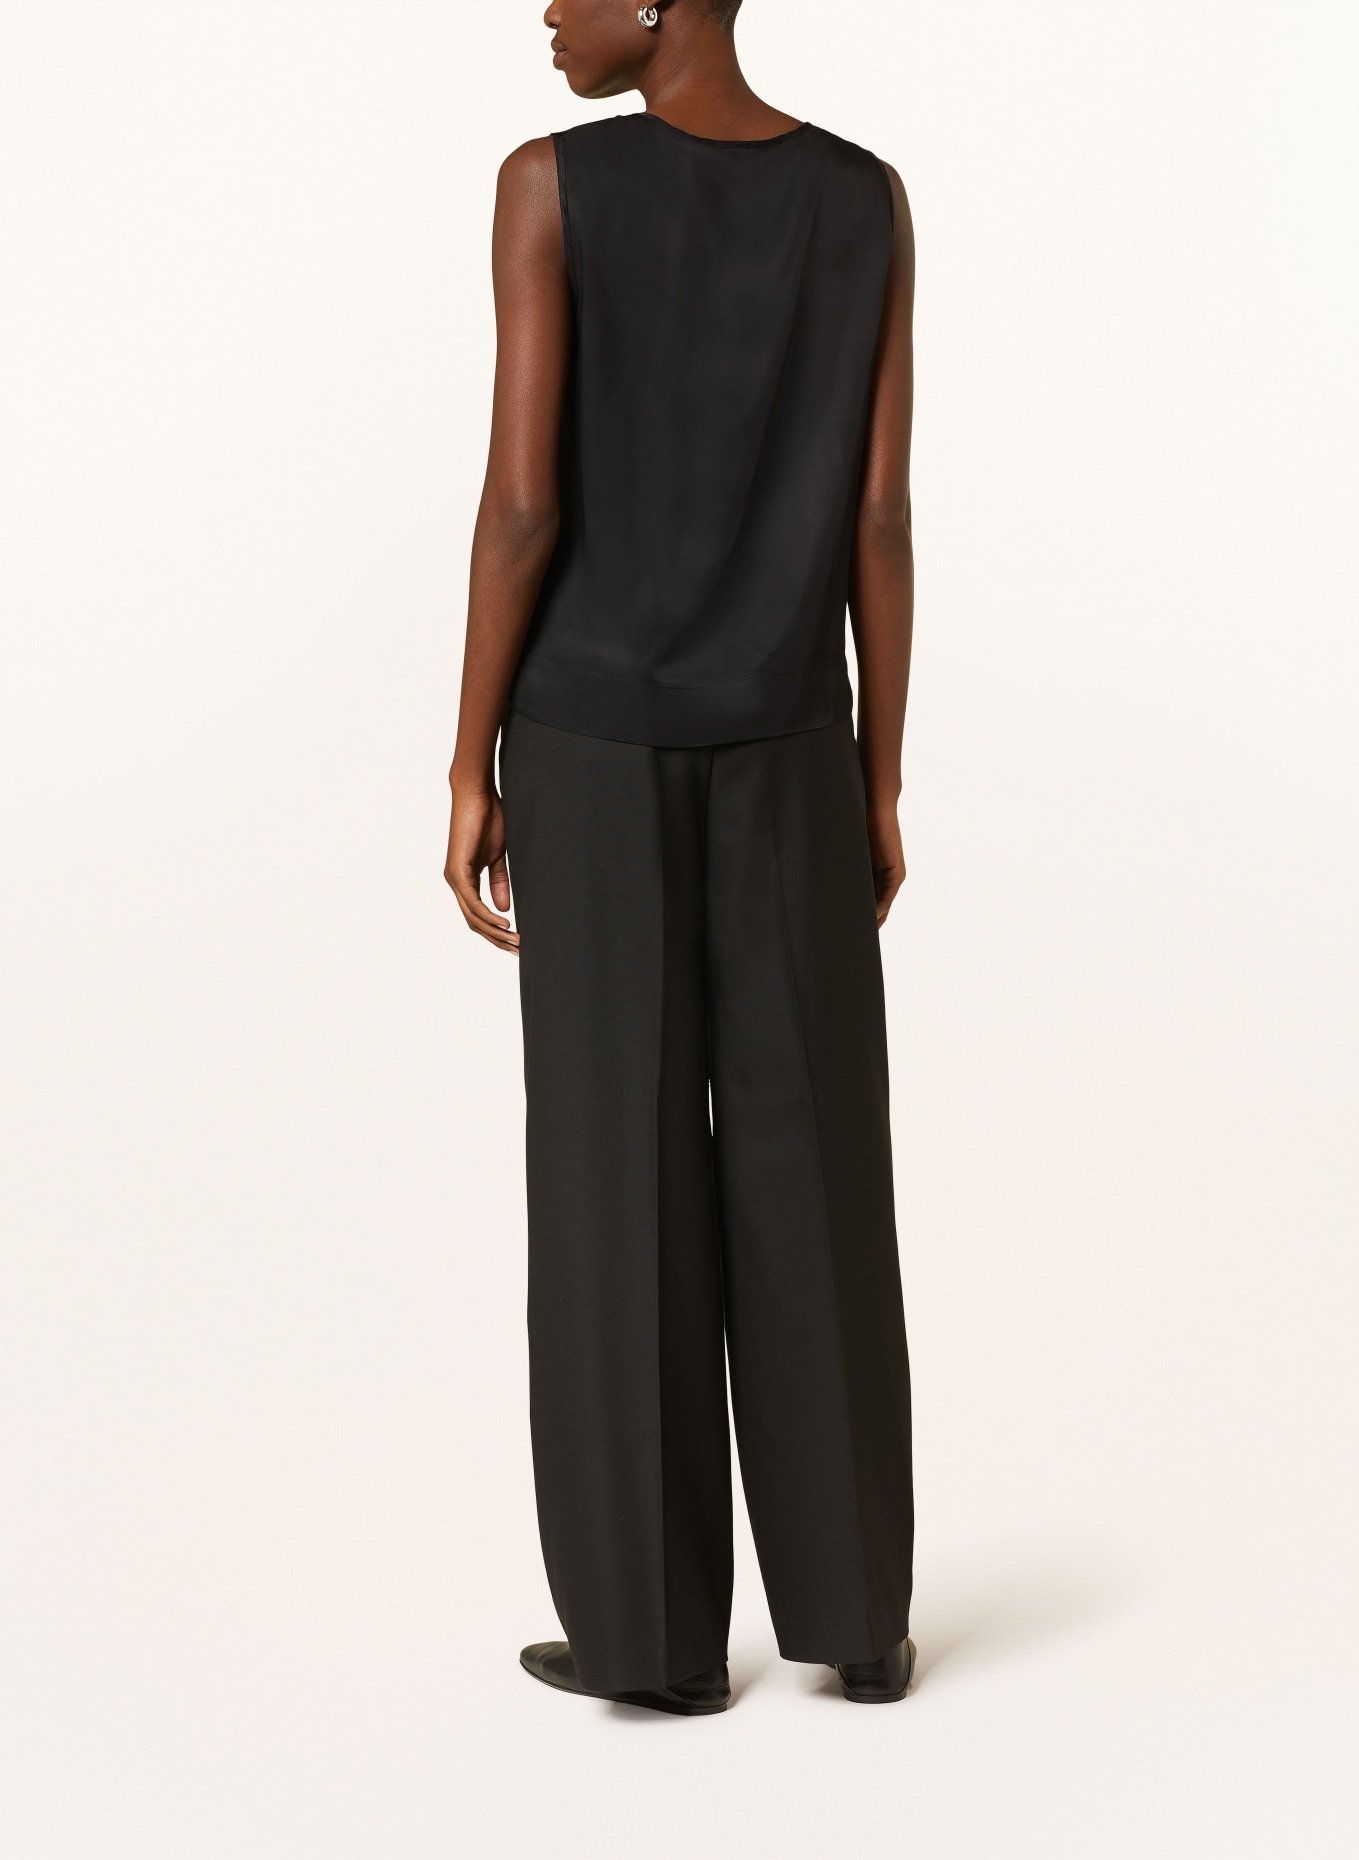 ETERNA Blouse top, Color: BLACK (Image 3)